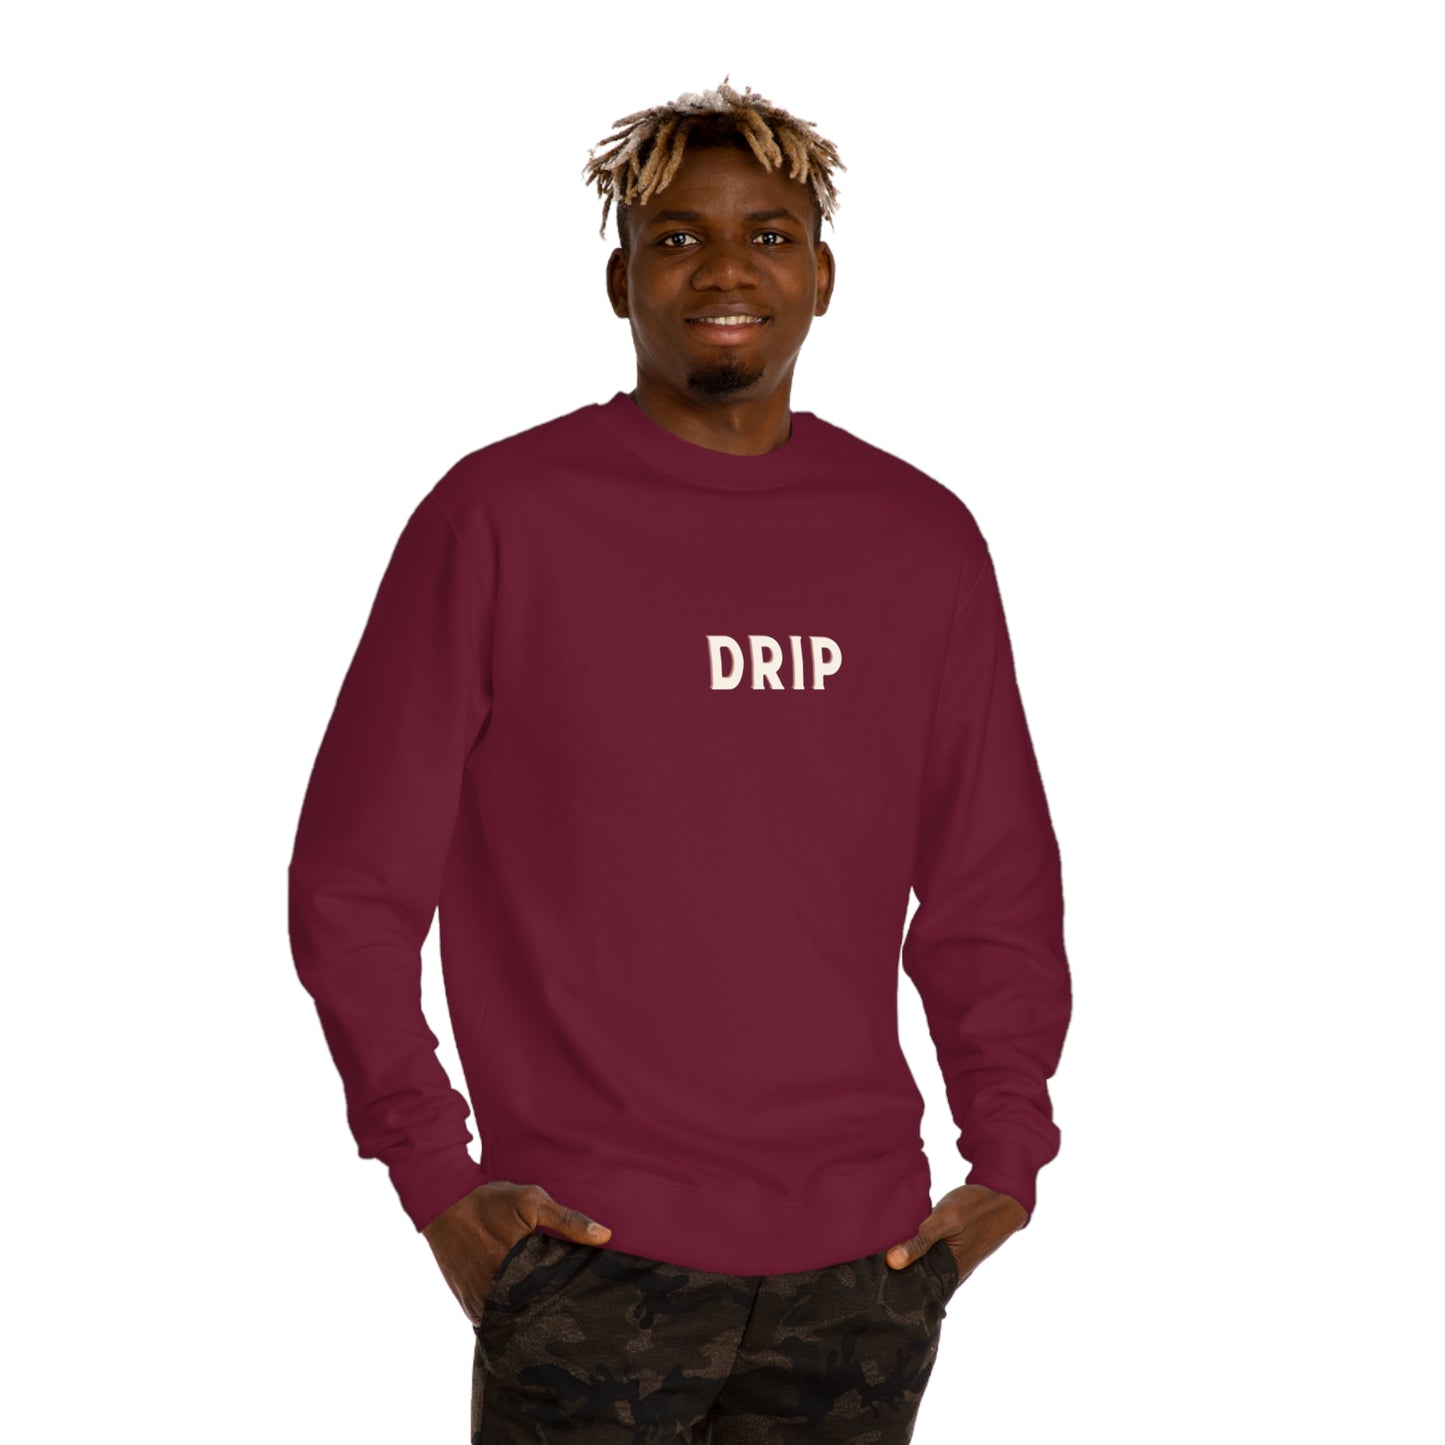 DRIP Crewneck Sweatshirt for Men